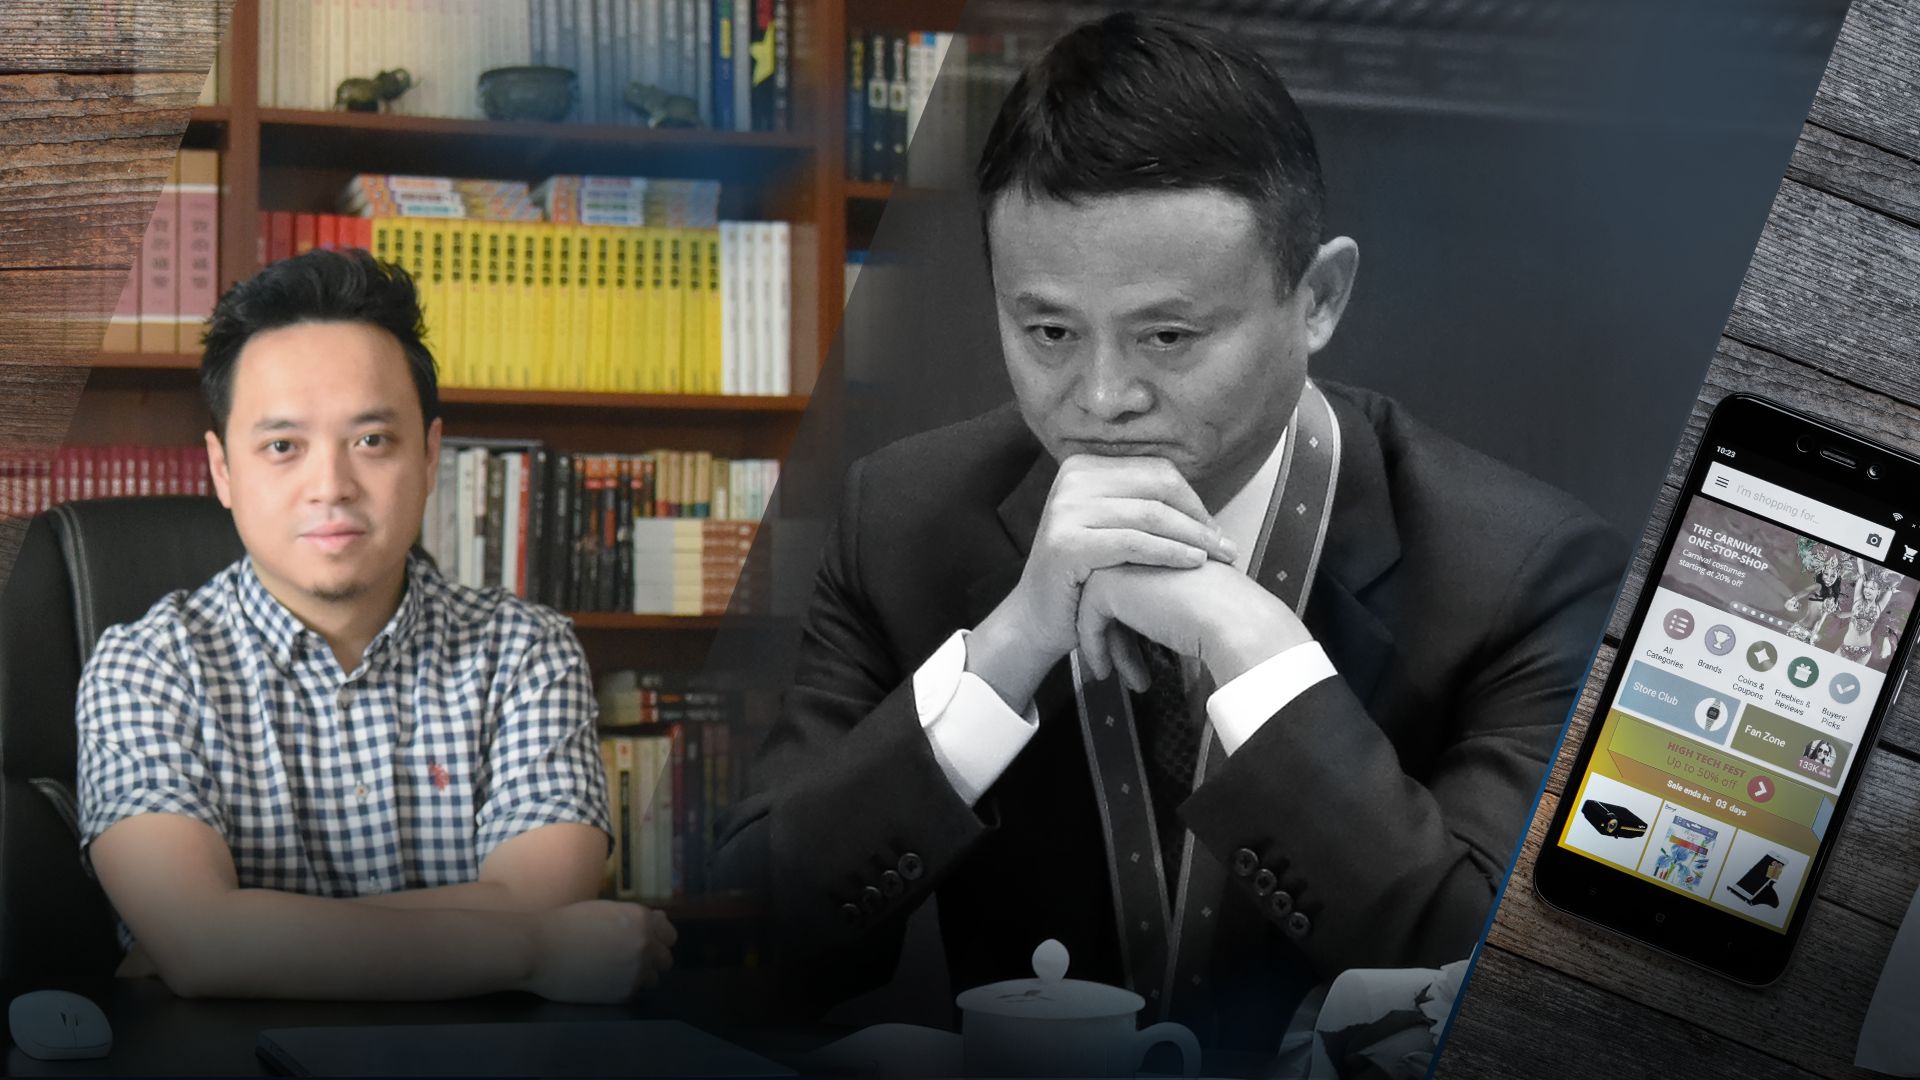 Има връзка между това, че той критикува властите, и неговото изчезване от общественото полезрение, казва бизнесменът Цън Цон (вляво)